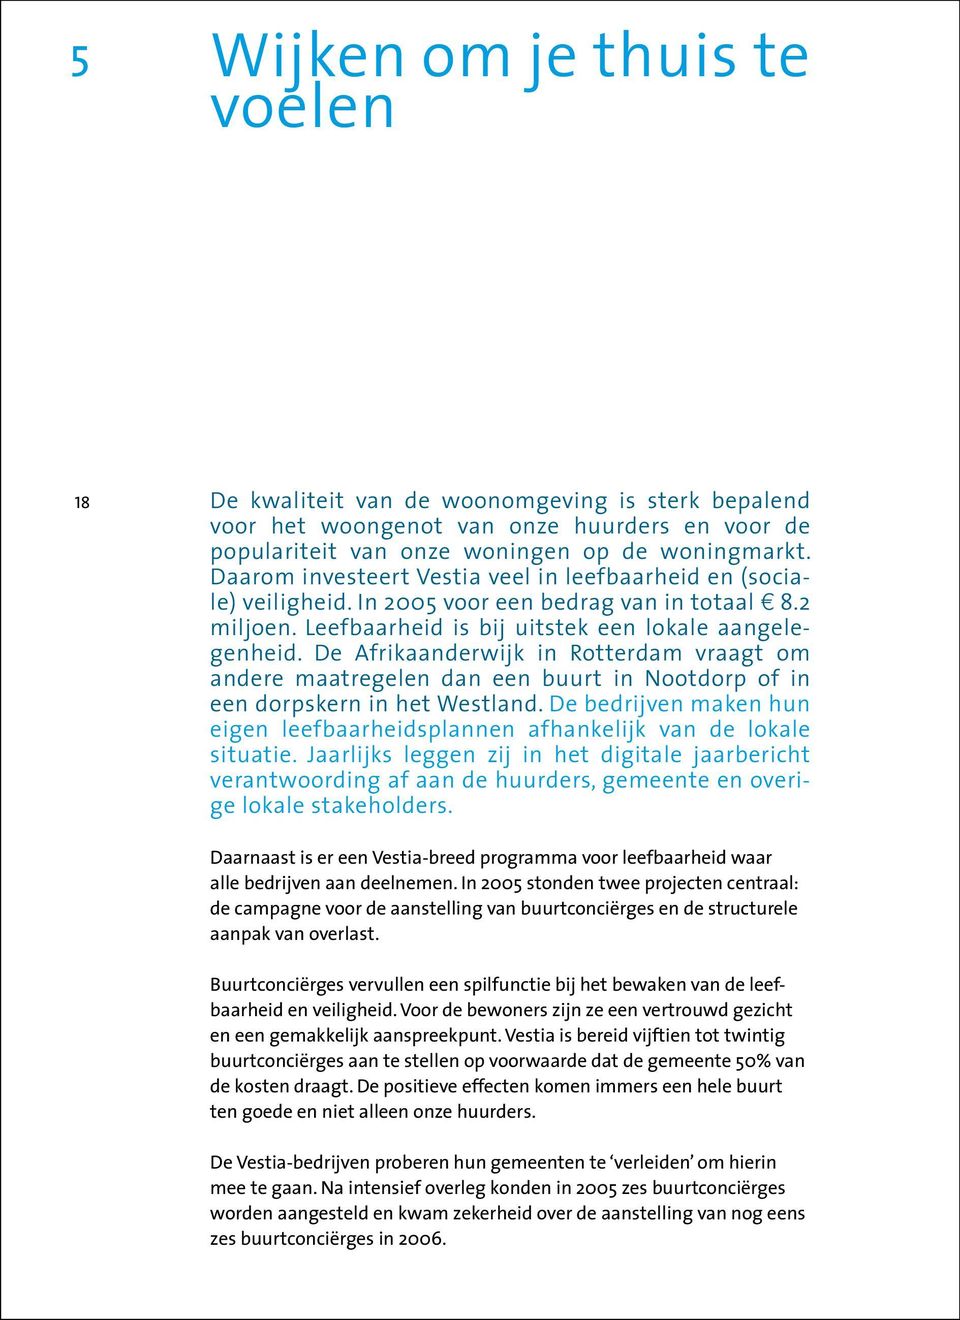 De Afrikaanderwijk in Rotterdam vraagt om andere maatregelen dan een buurt in Nootdorp of in een dorpskern in het Westland.